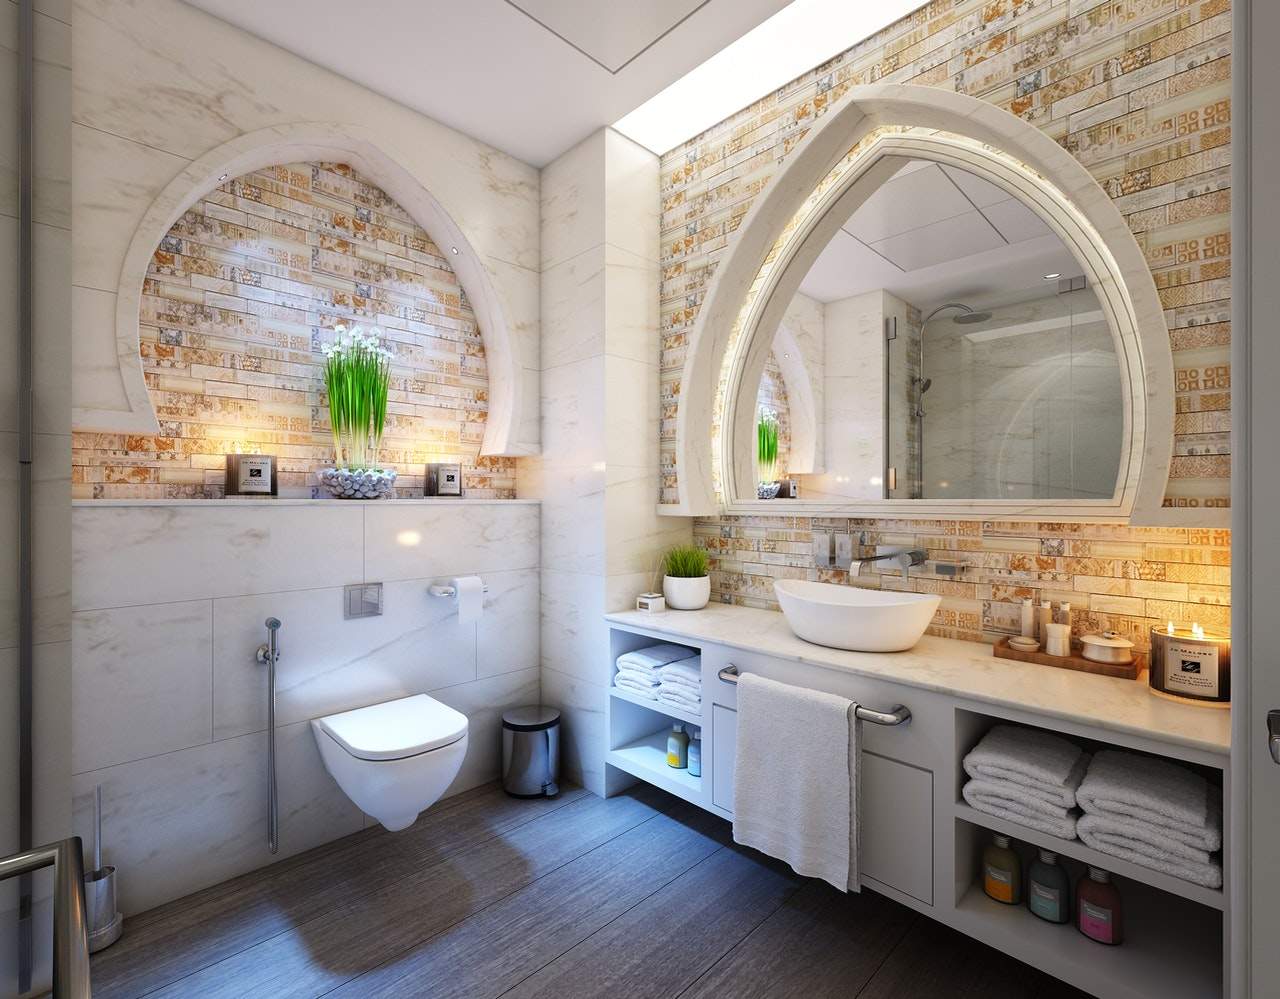 DIY Bathroom Renovation Ideas